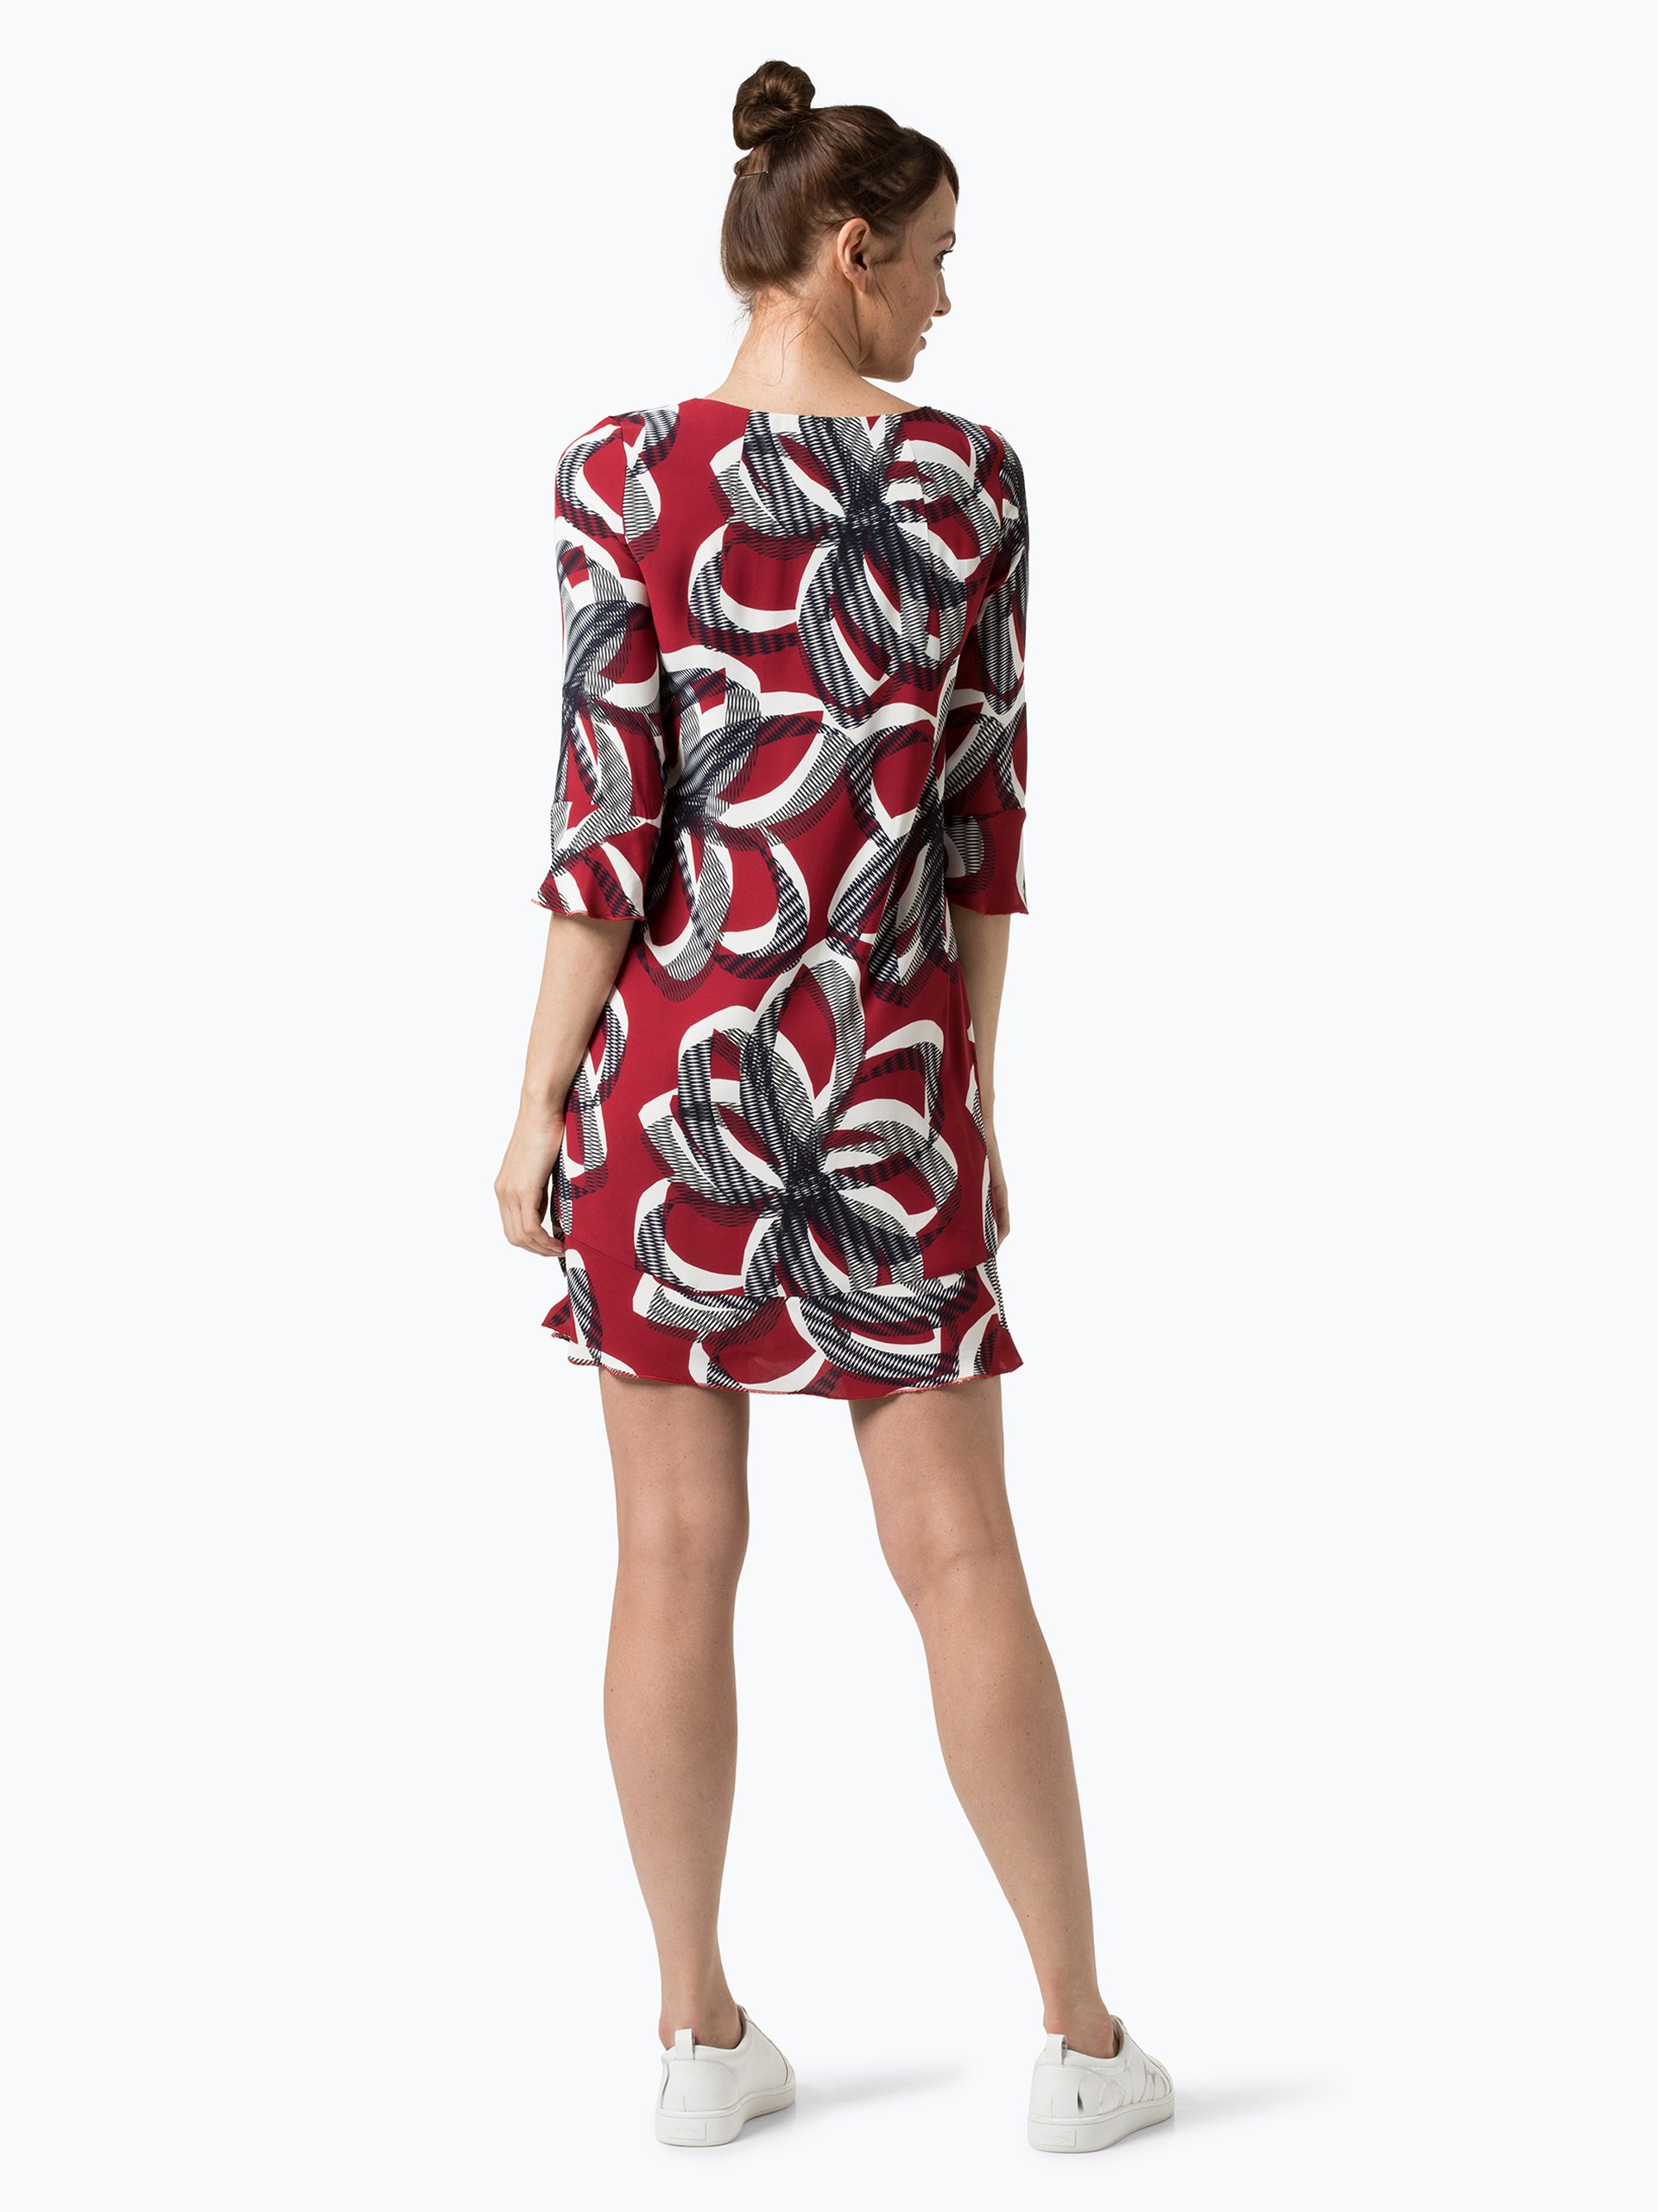 Marie Lund Damen Kleid rot gemustert online kaufen | PEEK ...